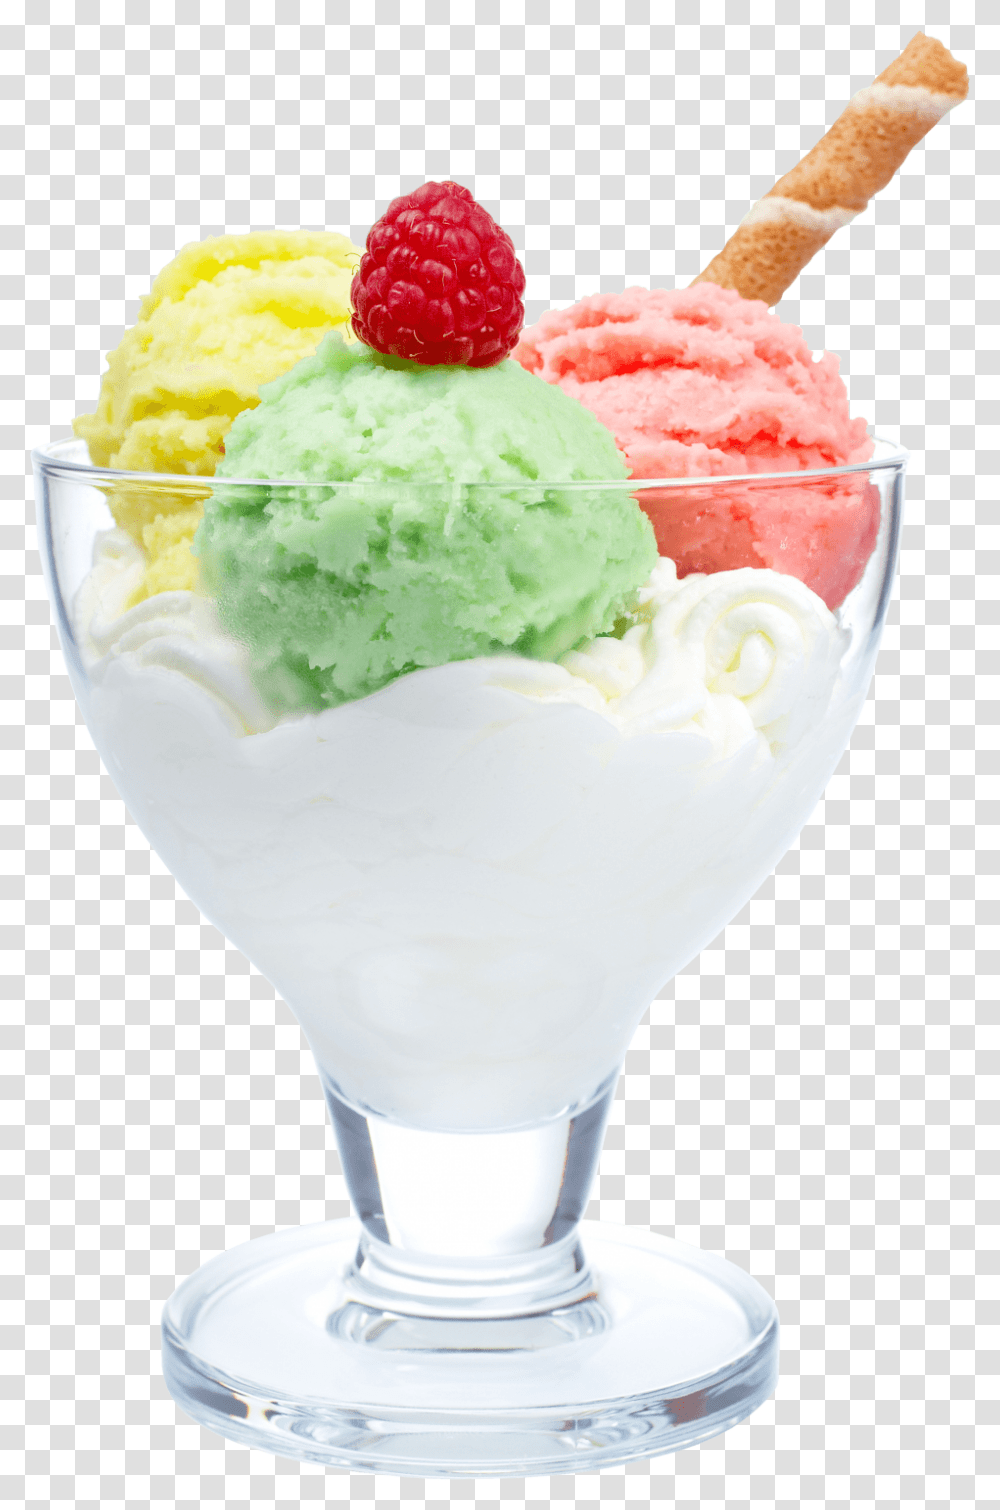 Large Icecream Image, Dessert, Food, Creme, Ice Cream Transparent Png